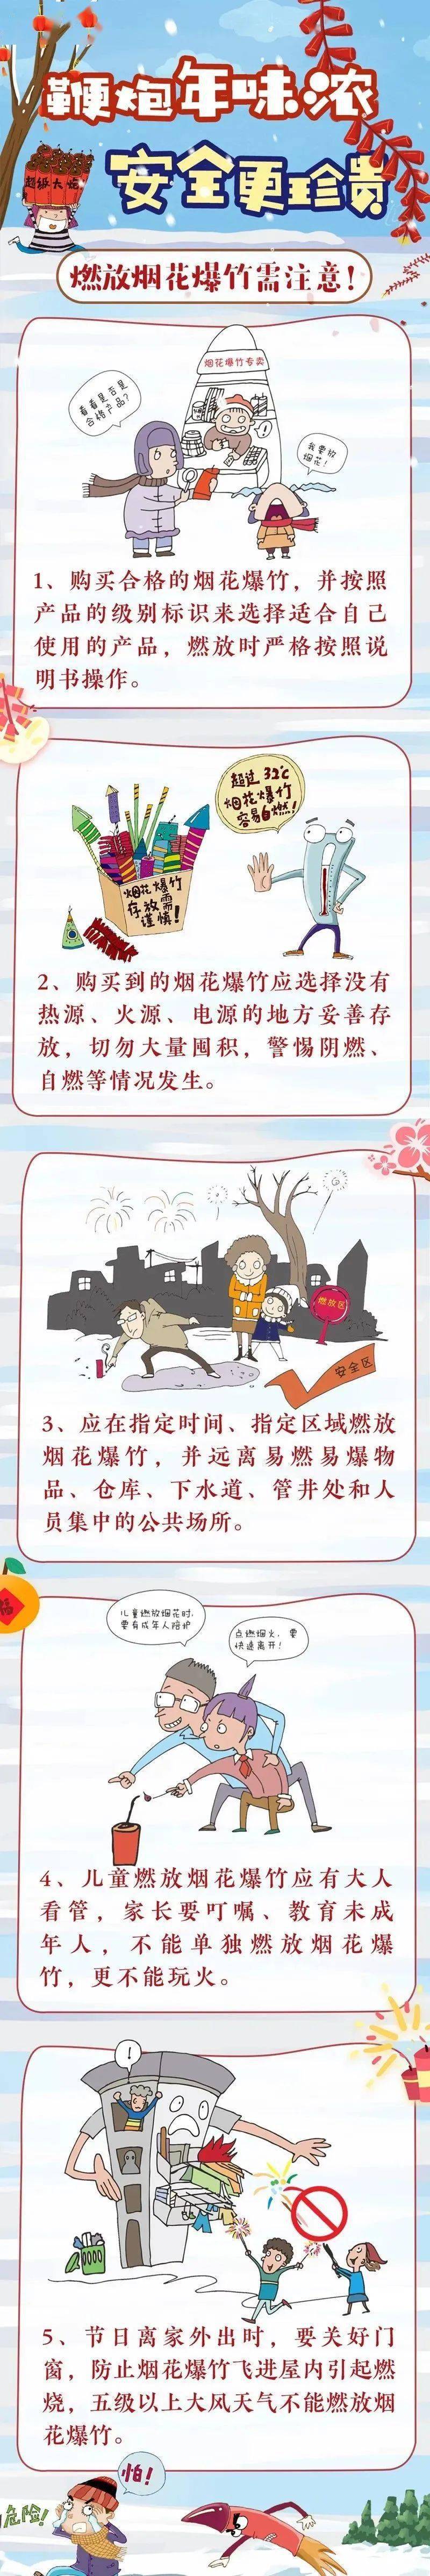 【网络中国节·春节】2024年春节期间安全合规燃放烟花爆竹的倡议书